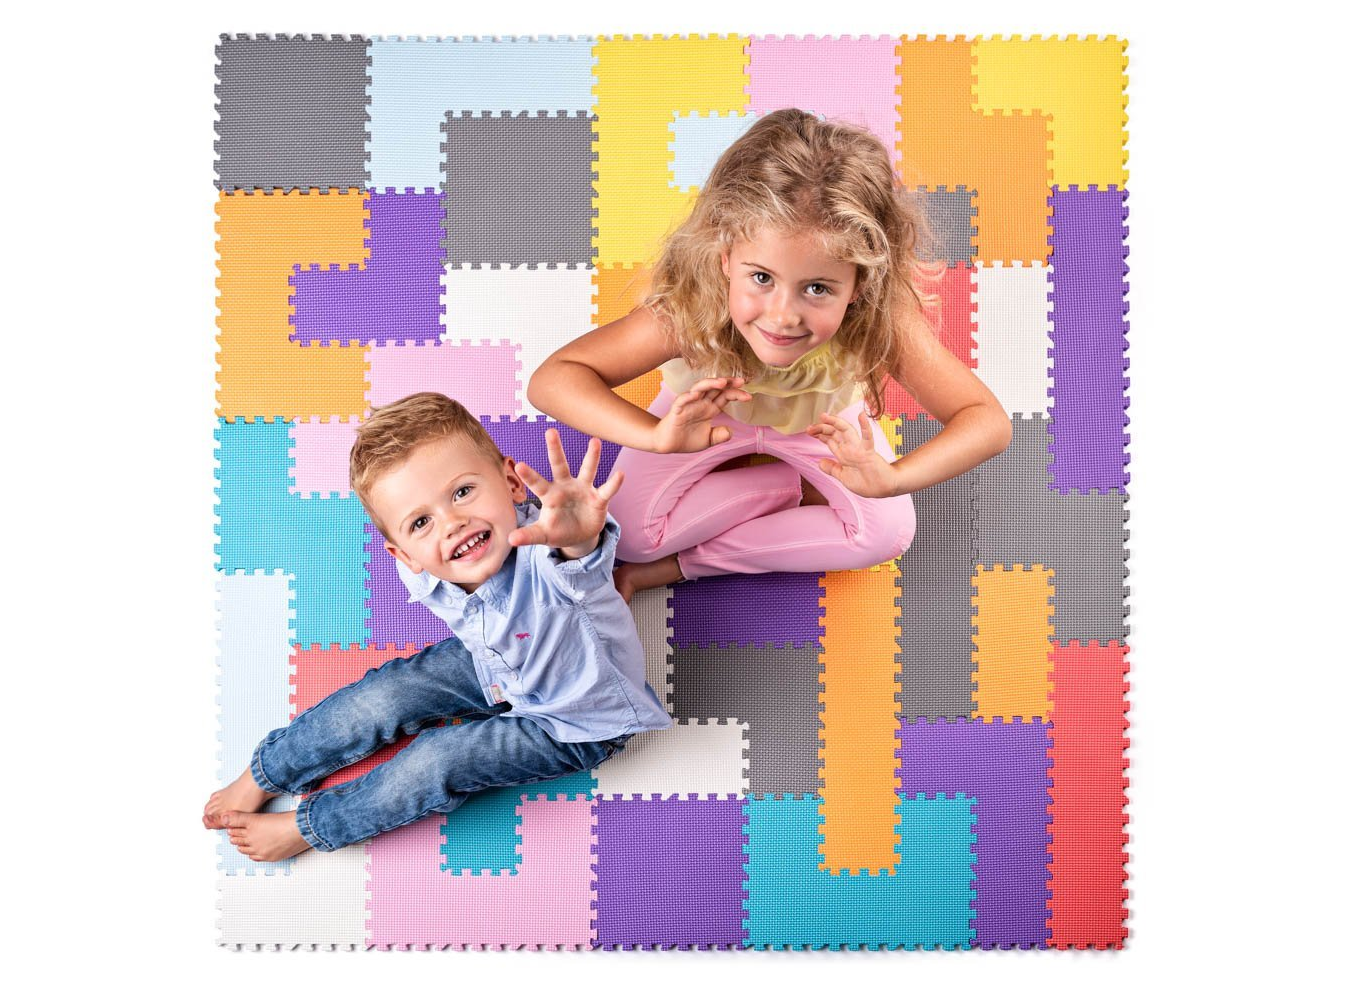 Pestrobarevné pěnové puzzle Plastica Hlavolam jsou vhodné pro děti od 3 let a slouží pro rozvoj, hraní i odpočinek.